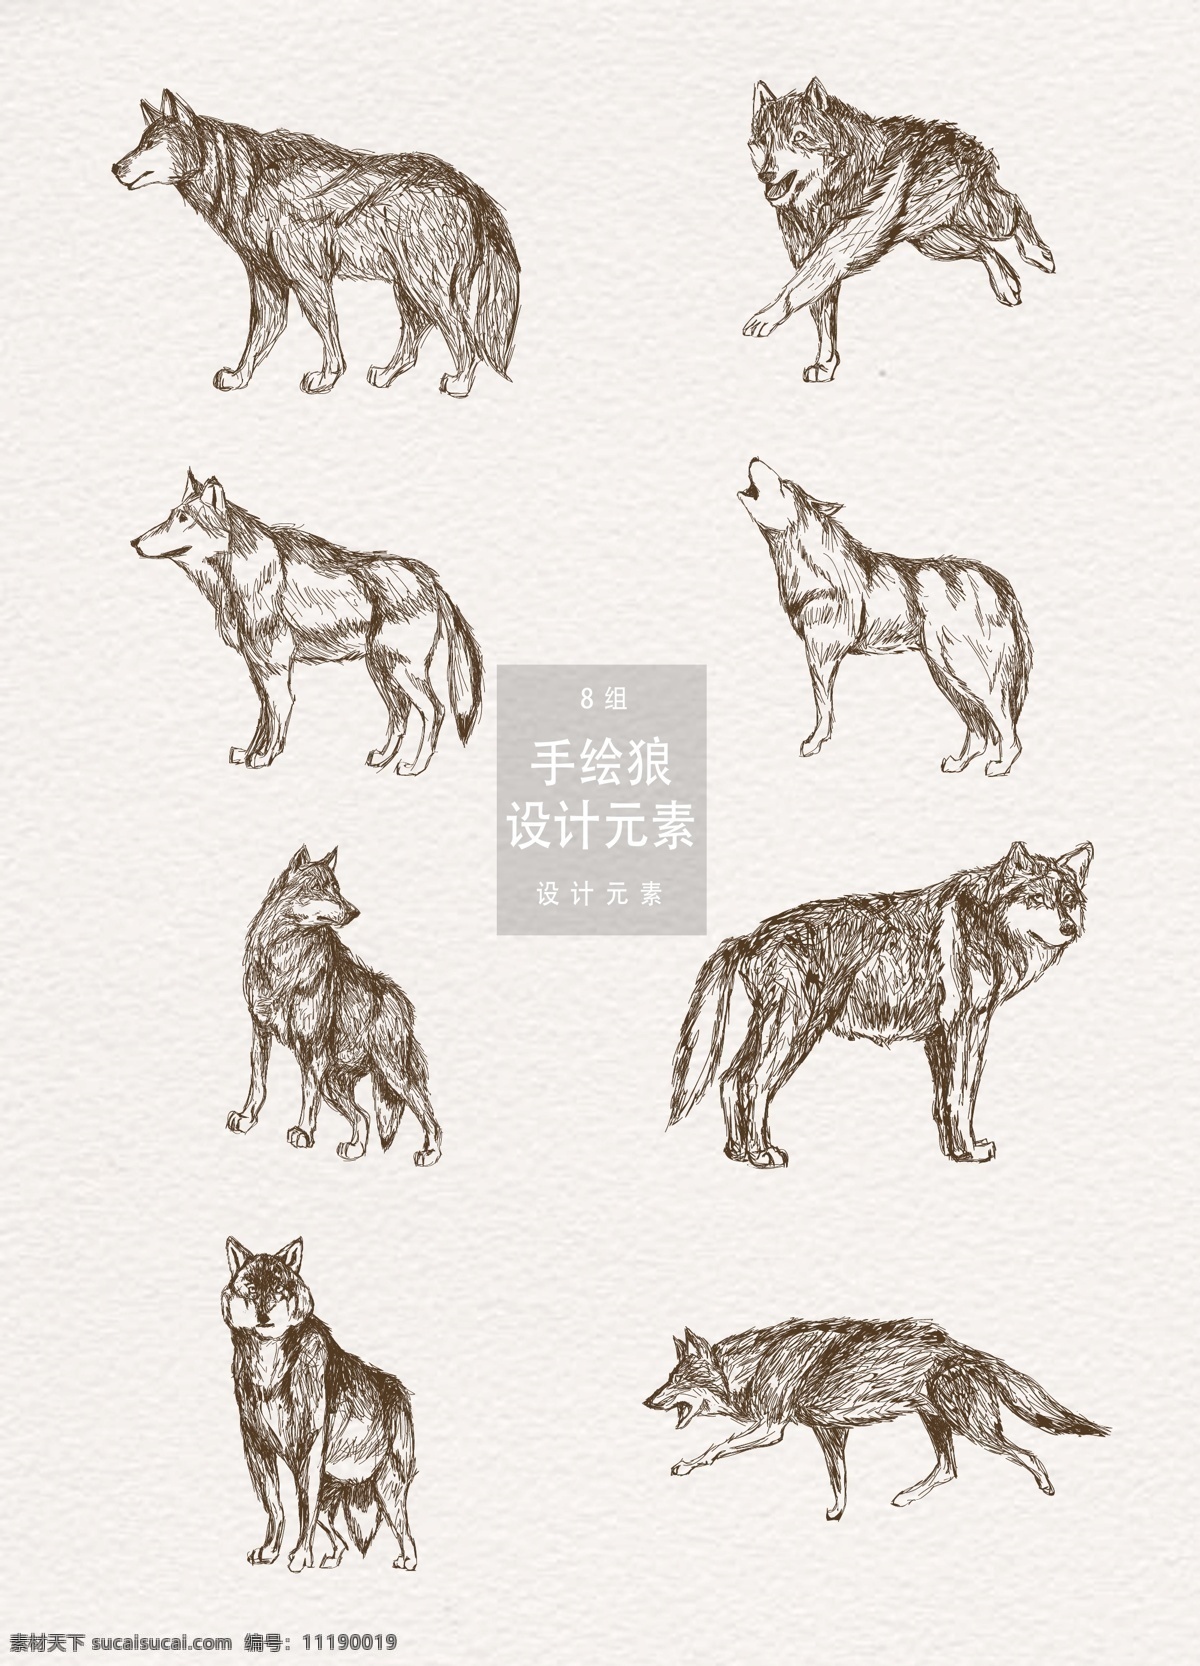 手绘 狼 插画 元素 动物 手绘动物 设计元素 手绘插画 手绘狼 狼群